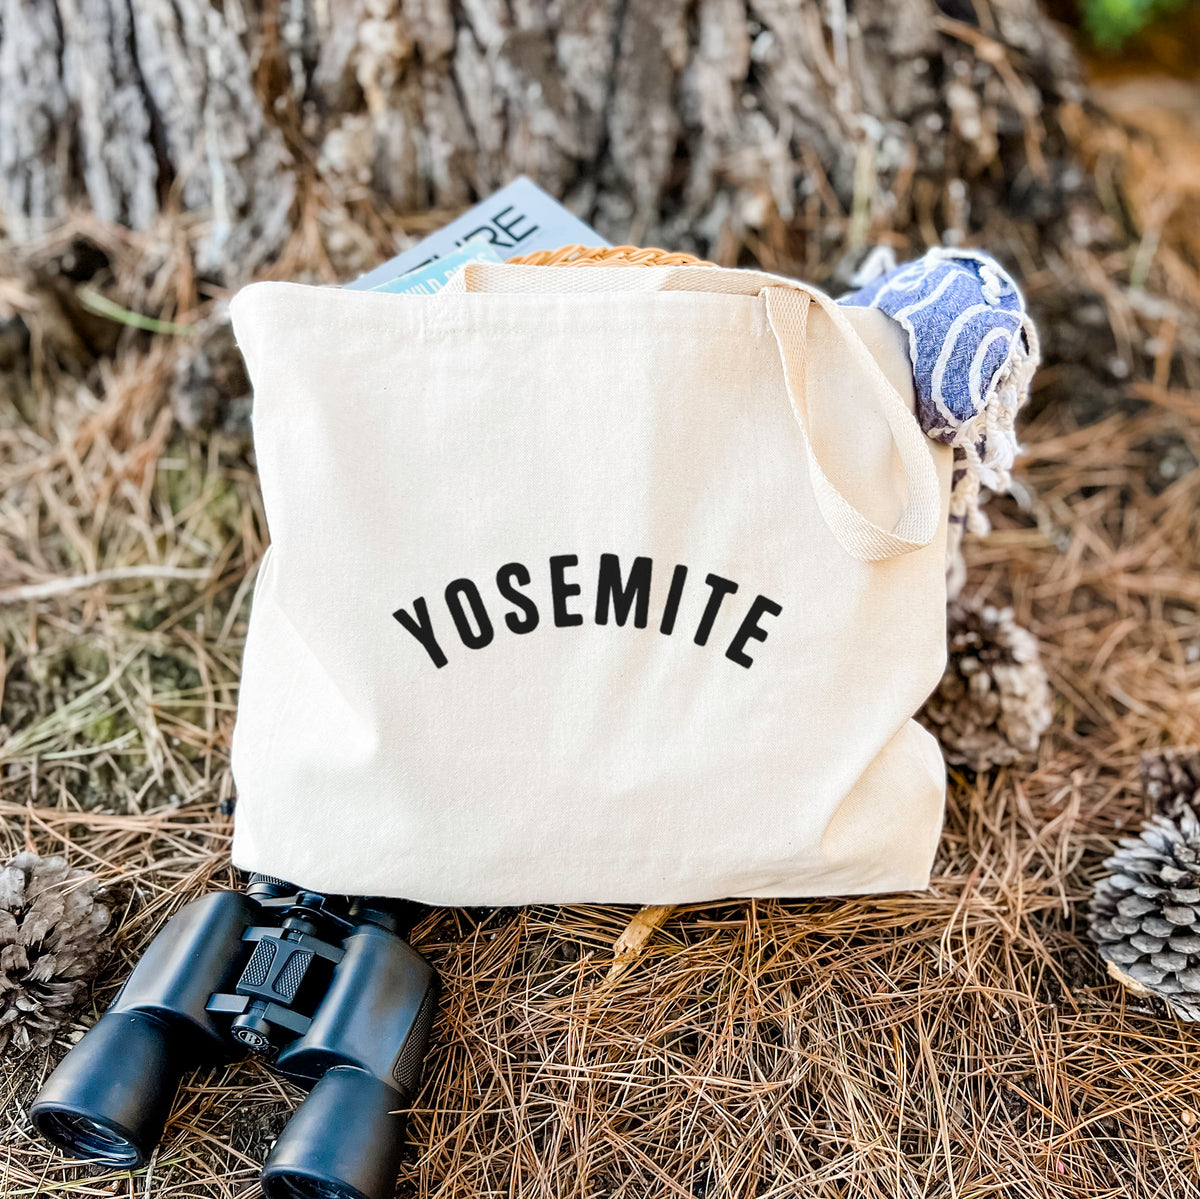 Yosemite - Tote Bag